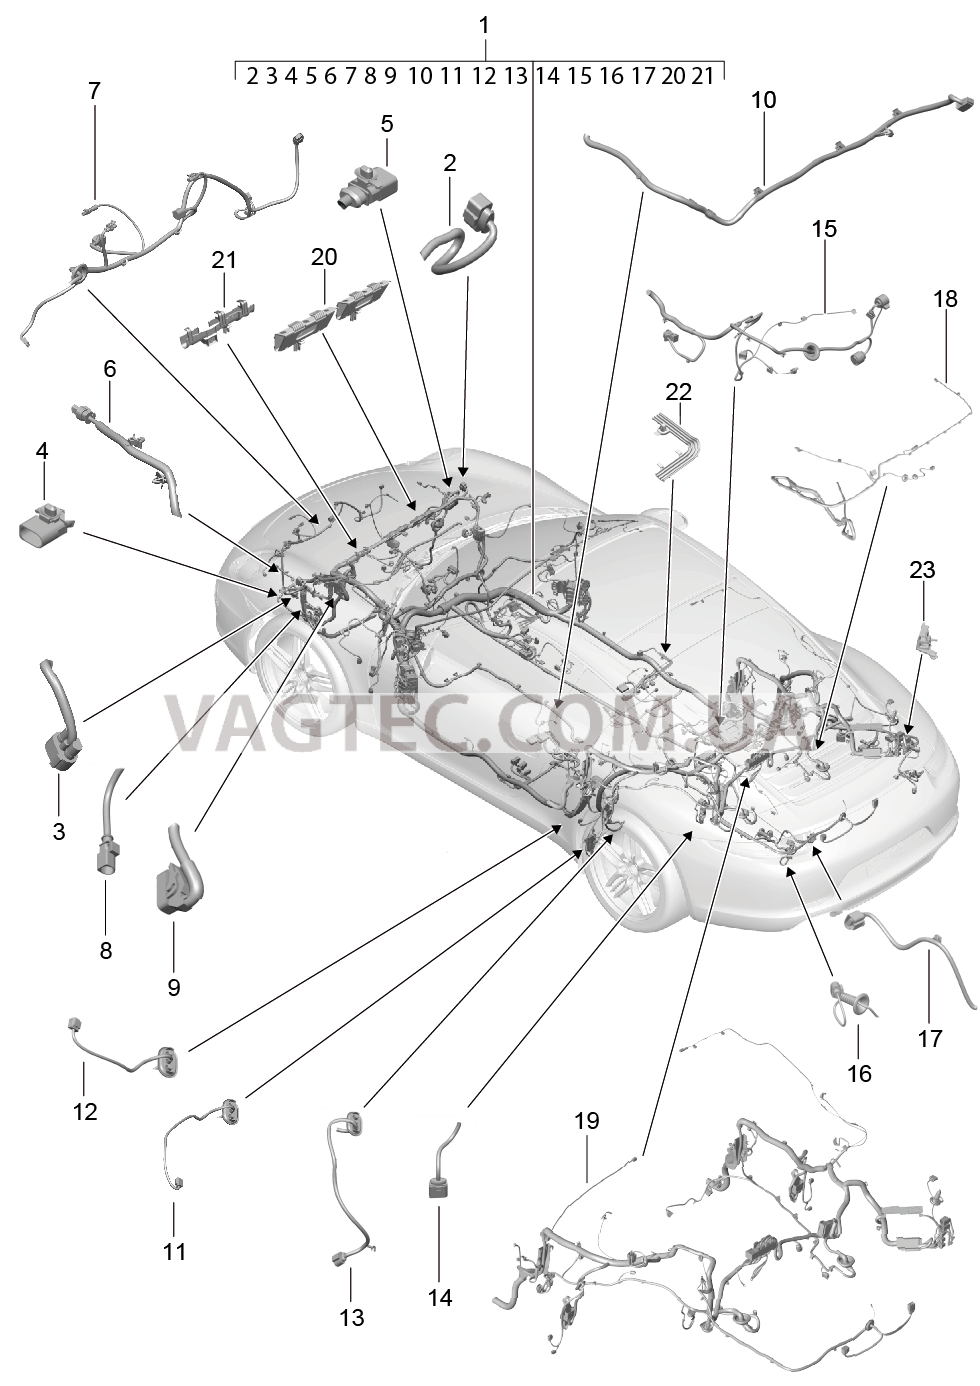 902-010 Жгуты проводов, Салон, и, Сегмент детали для PORSCHE 911.Carrera 2012-2016USA